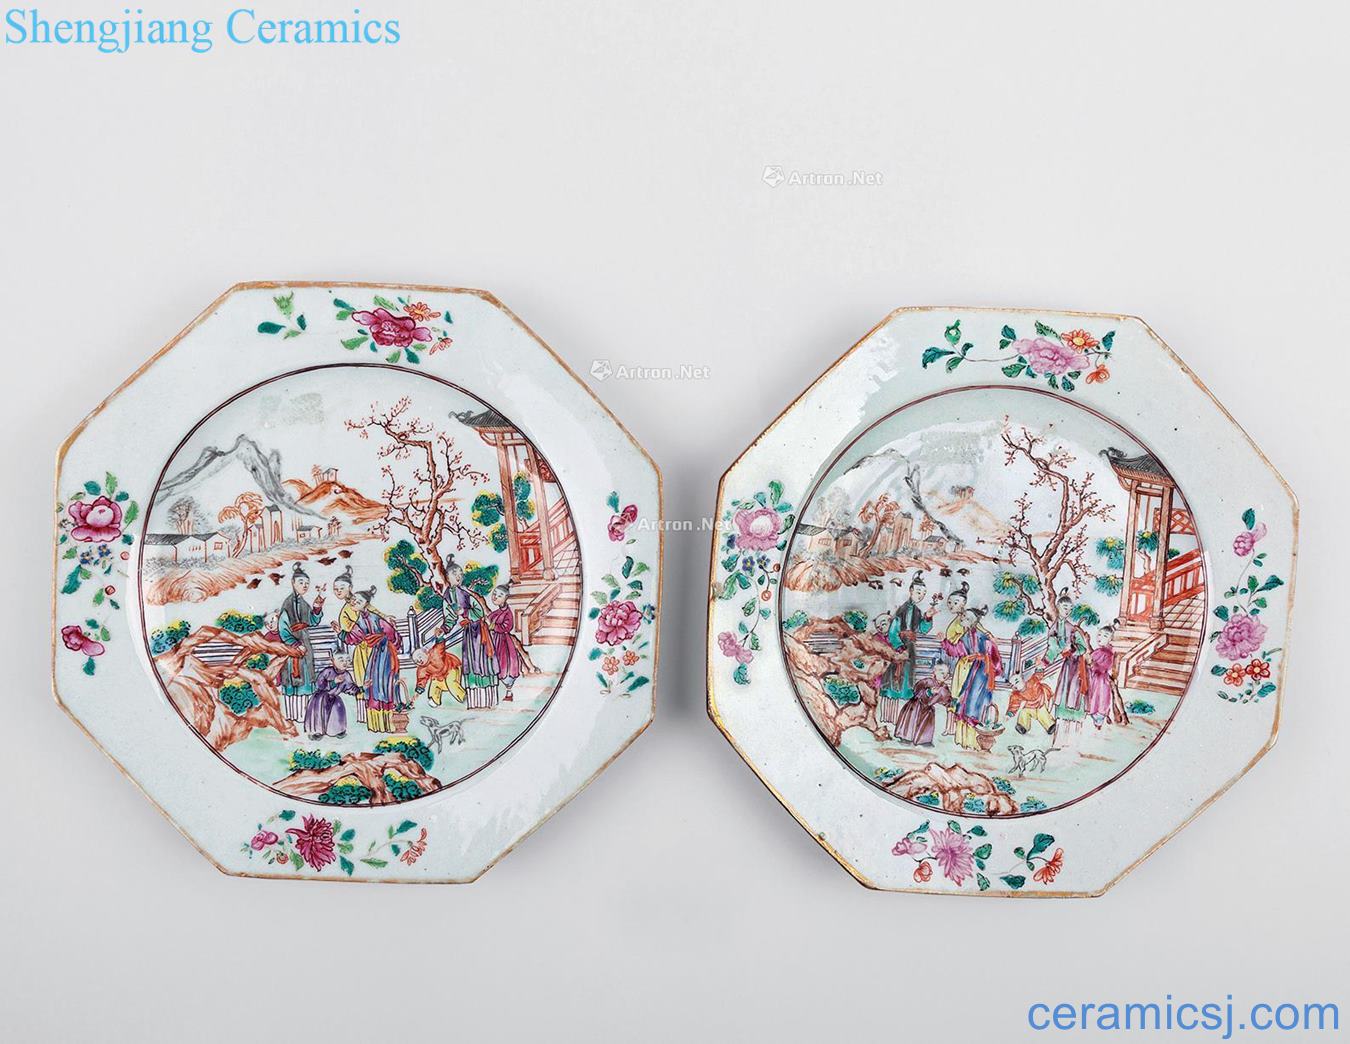 Qing yongzheng pastel figure eight side plate (a)